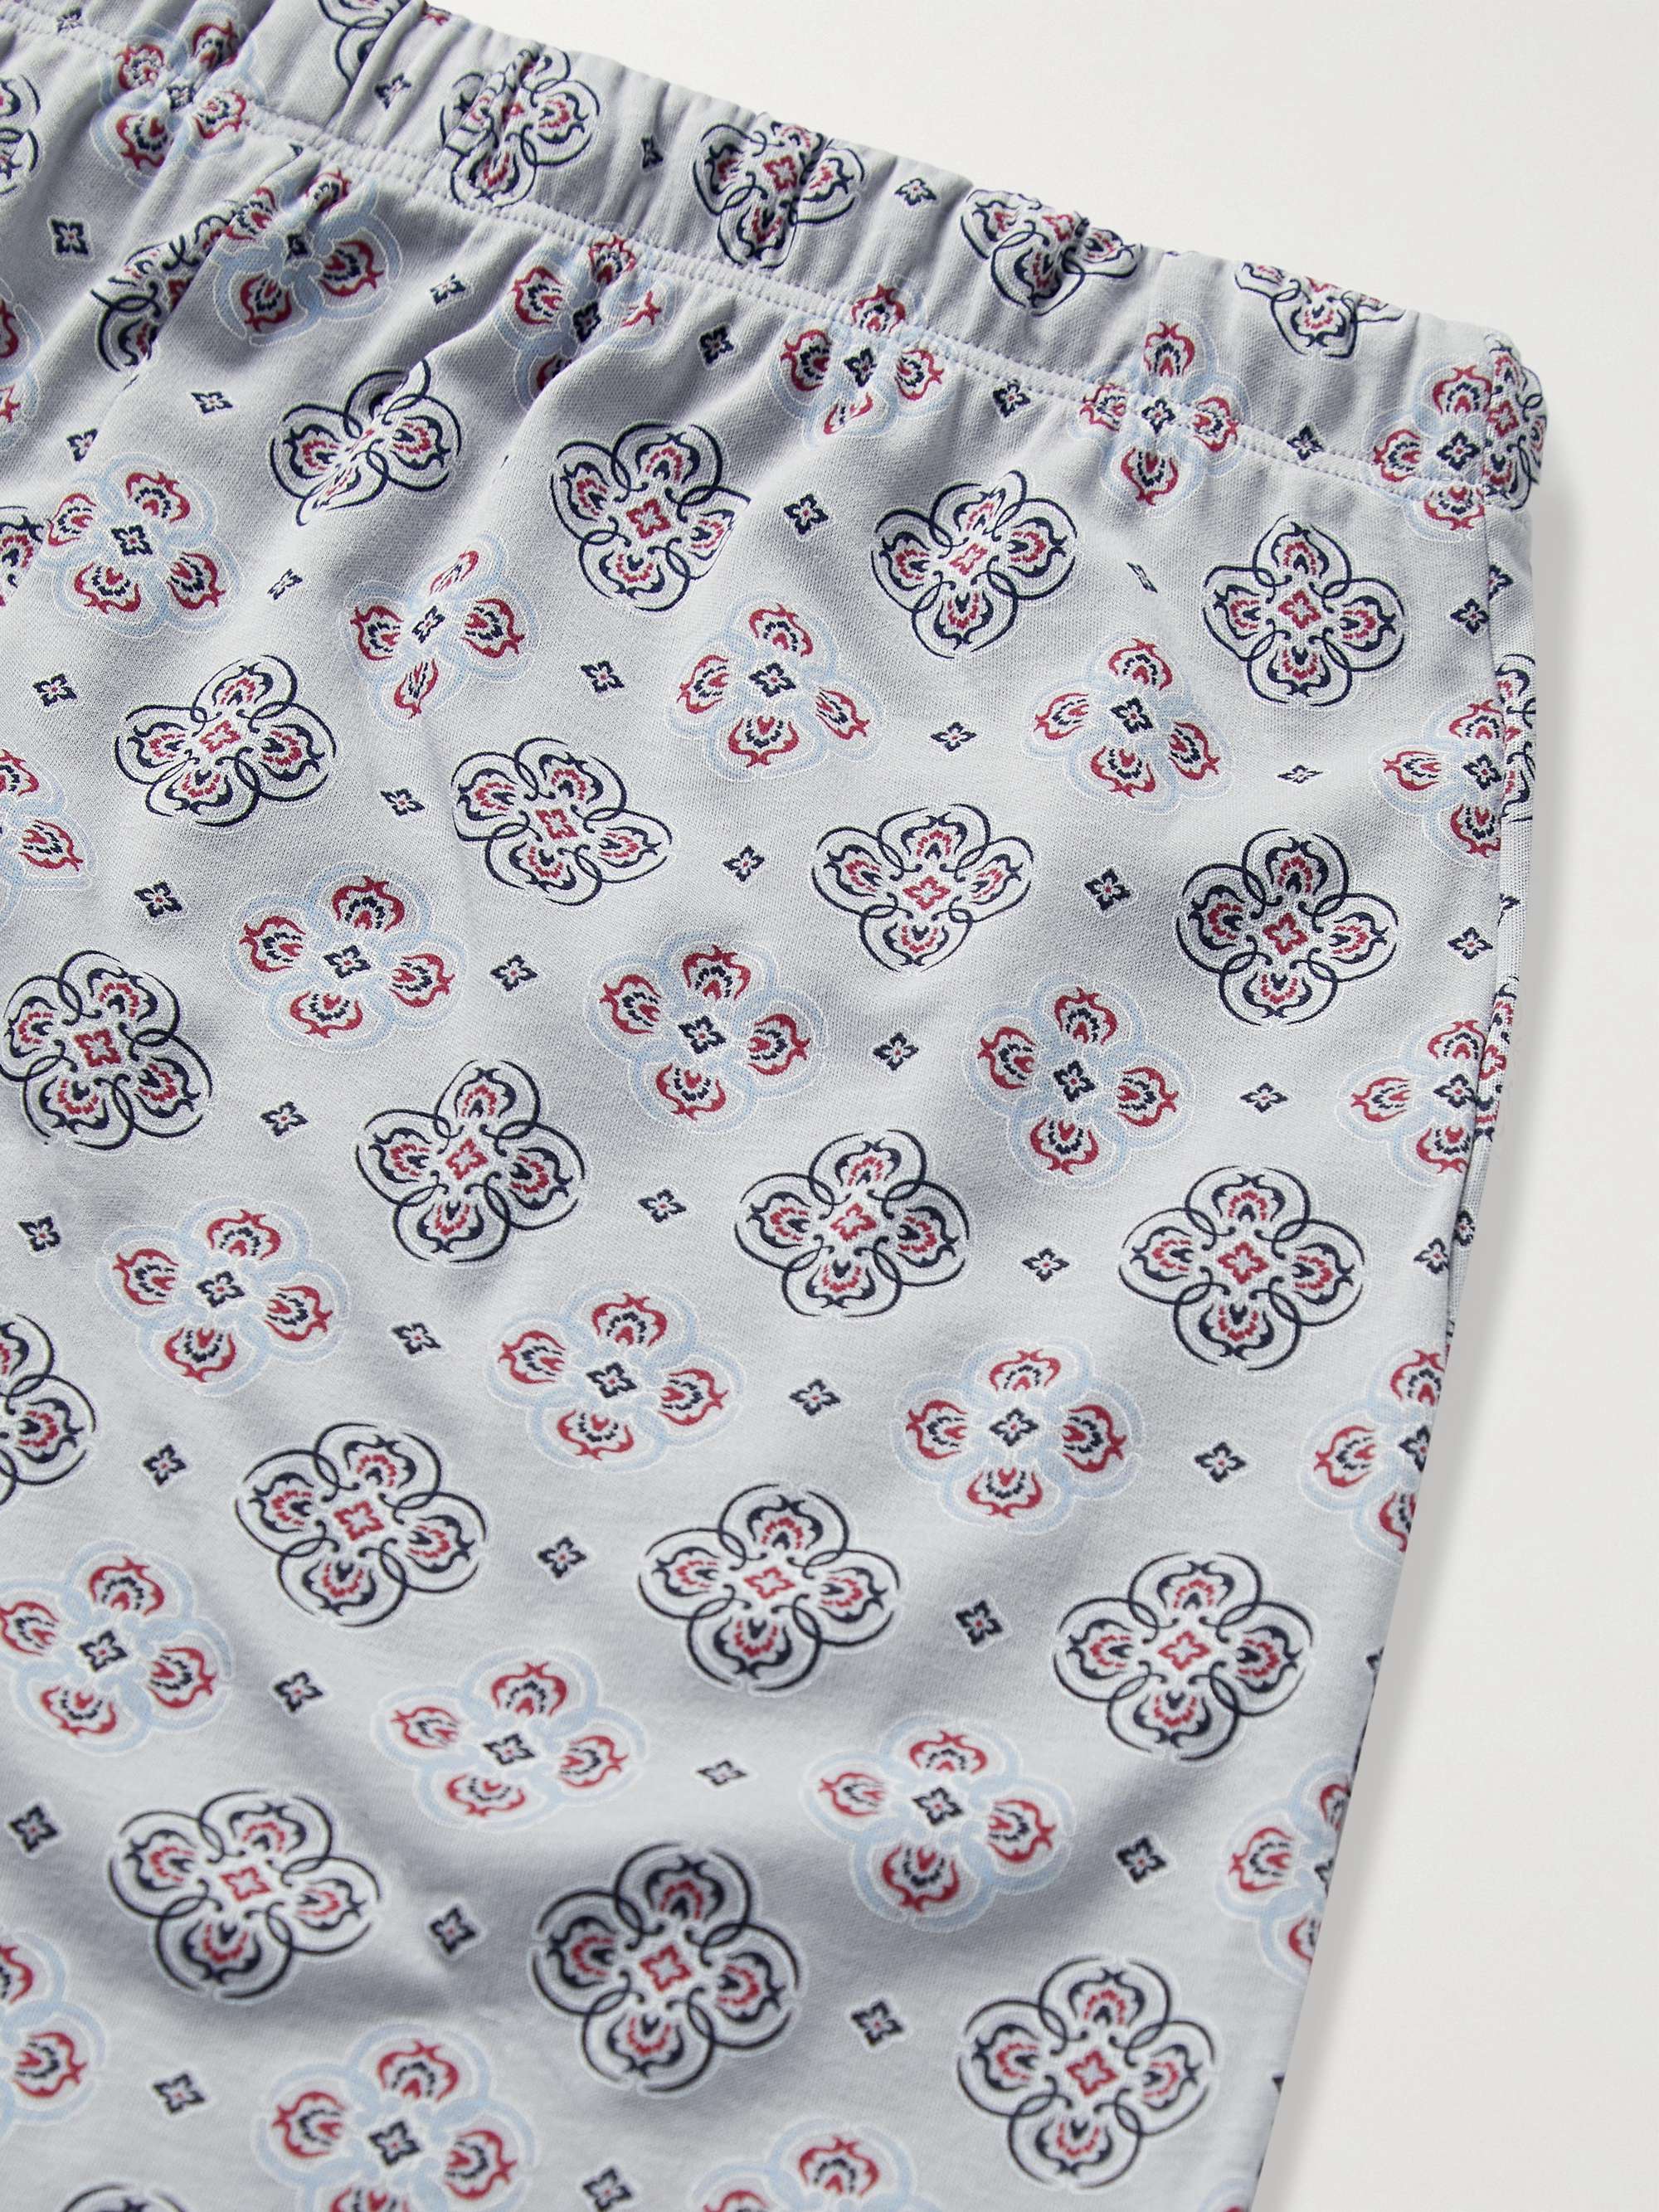 HANRO Night & Day Printed Cotton Pyjama Trousers